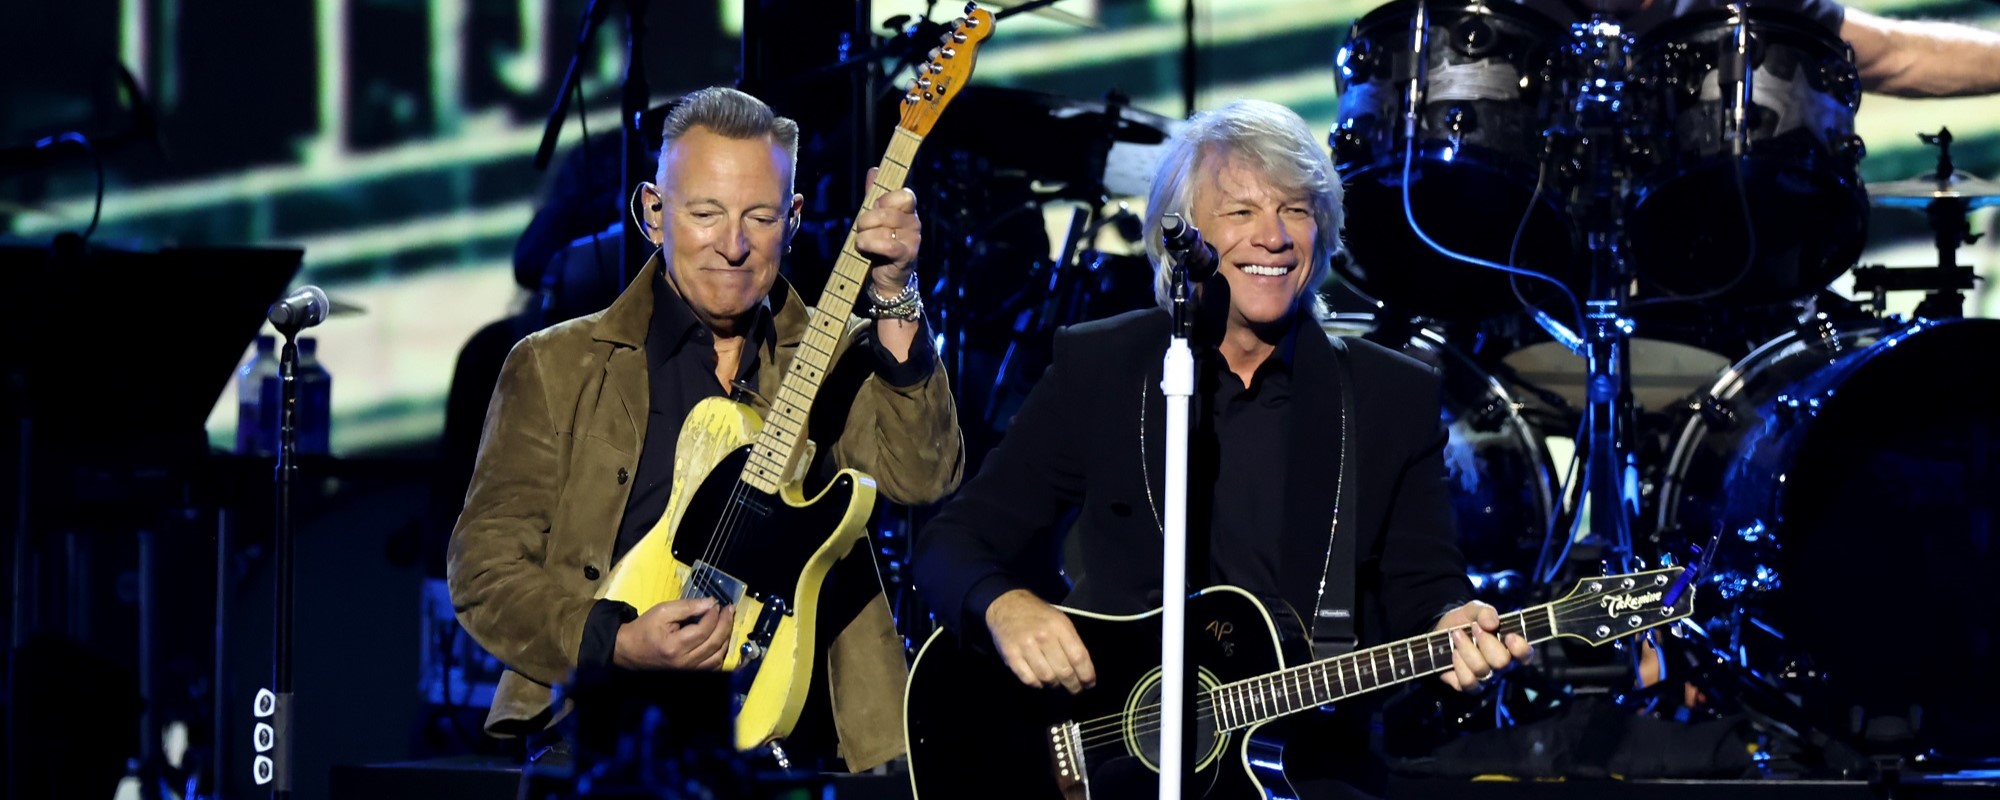 Jon Bon Jovi révèle que lui et Bruce Springsteen font de longs trajets ensemble et discutent simplement